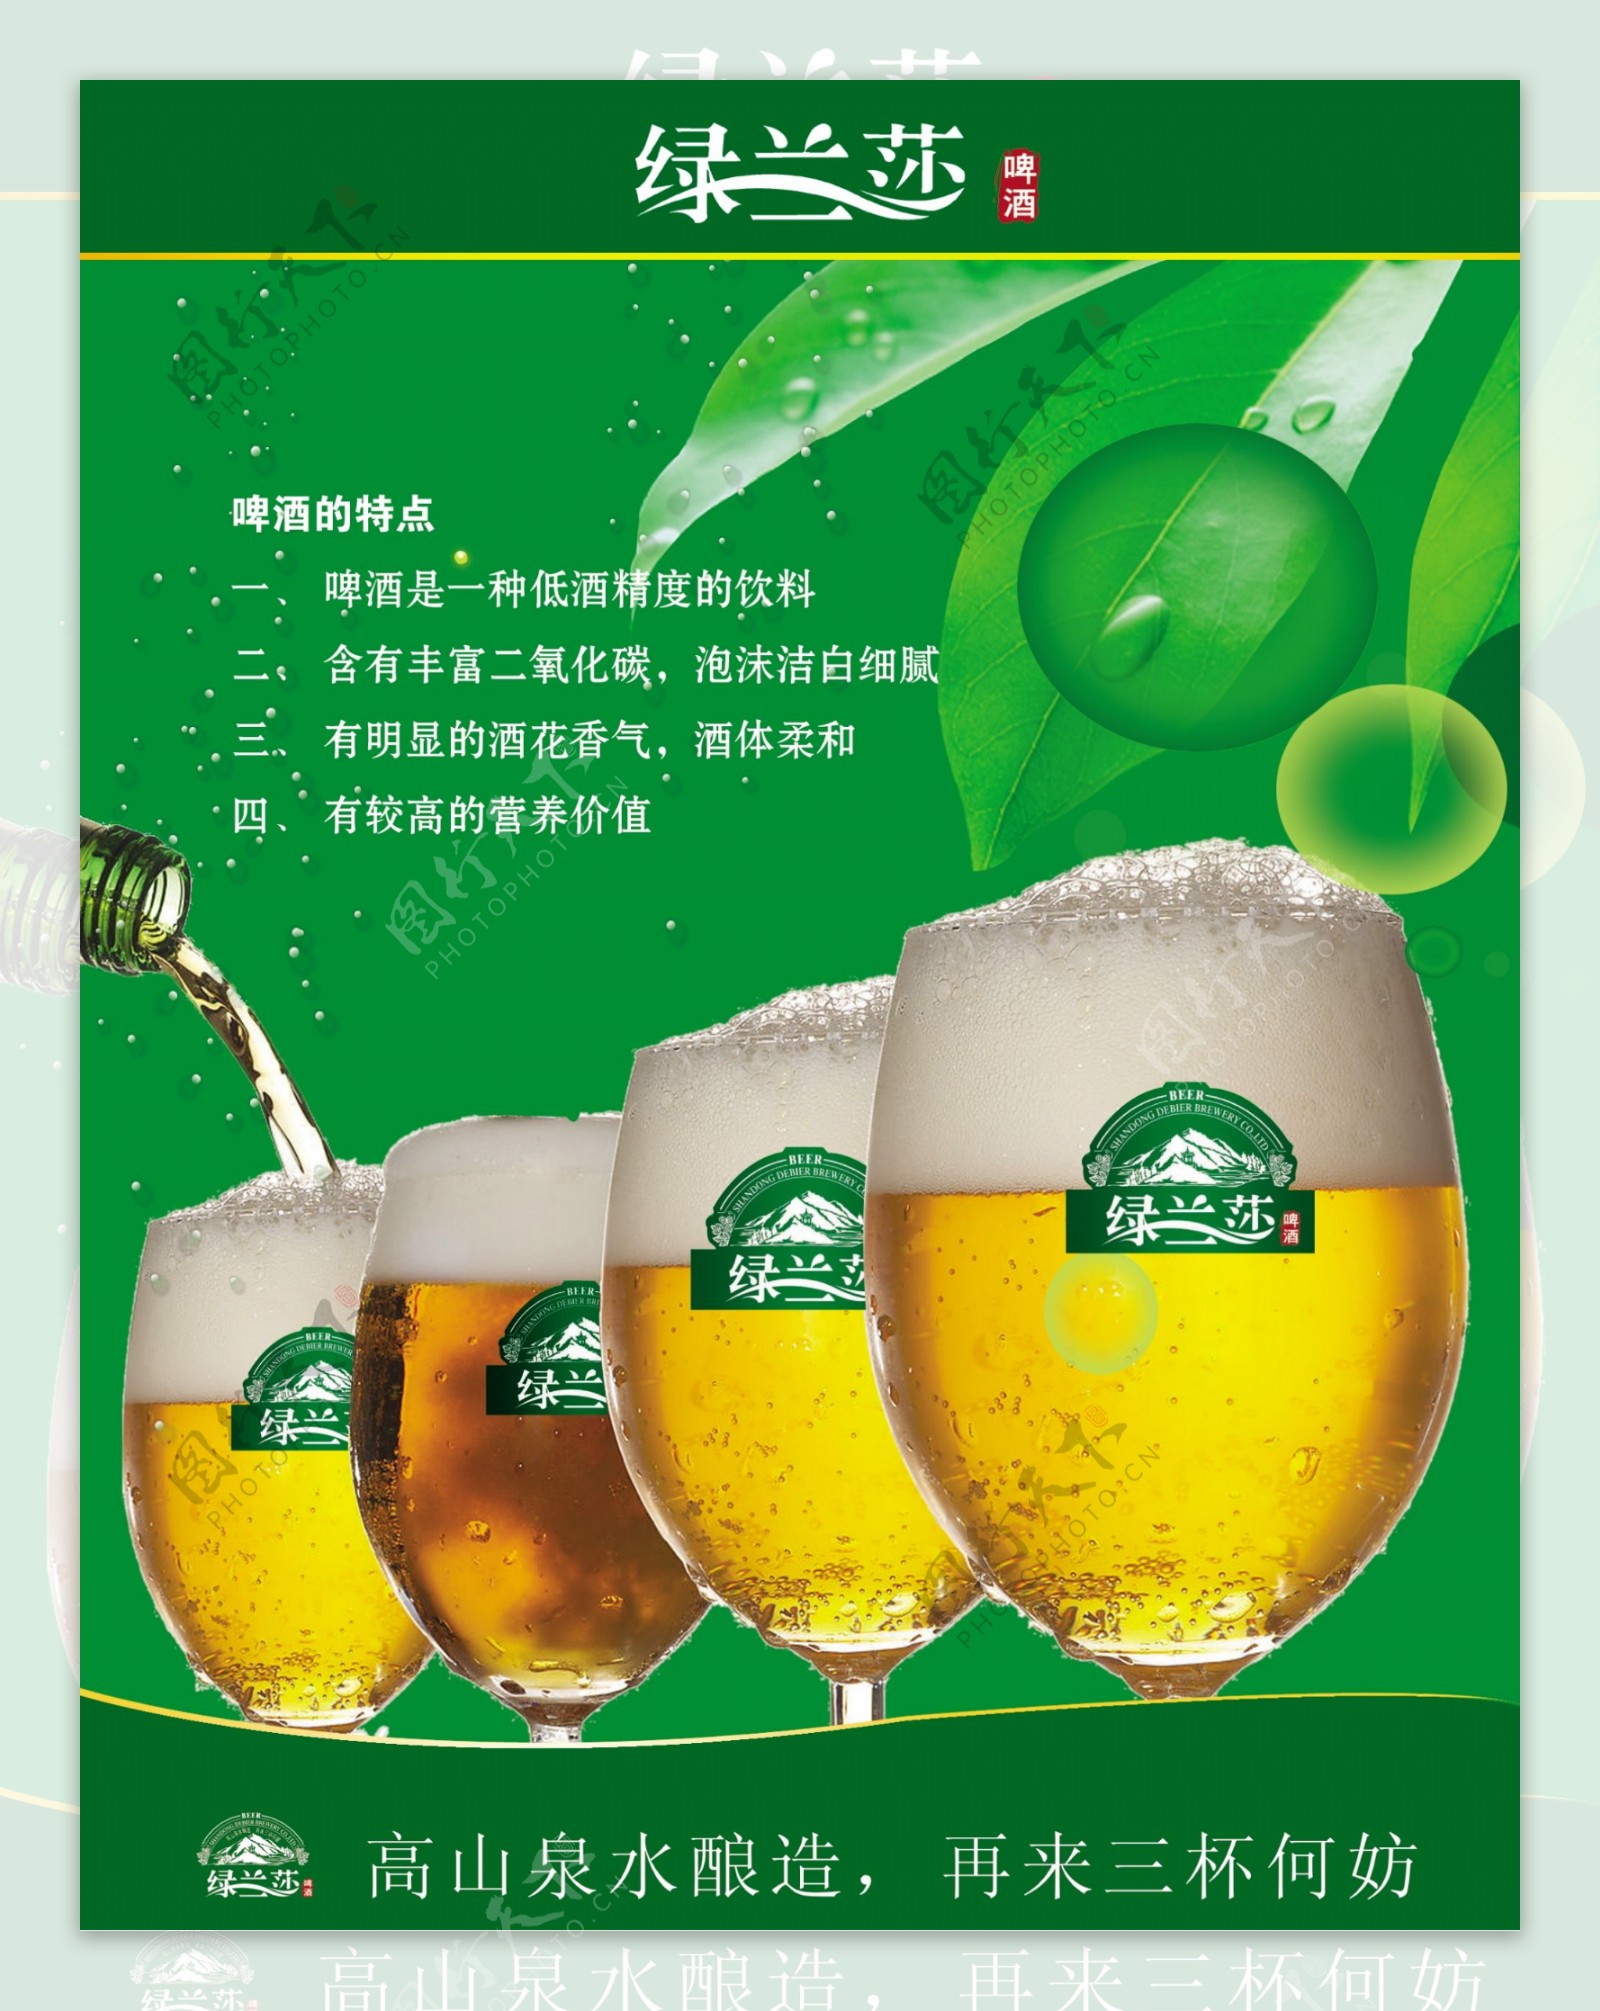 绿兰莎啤酒图片